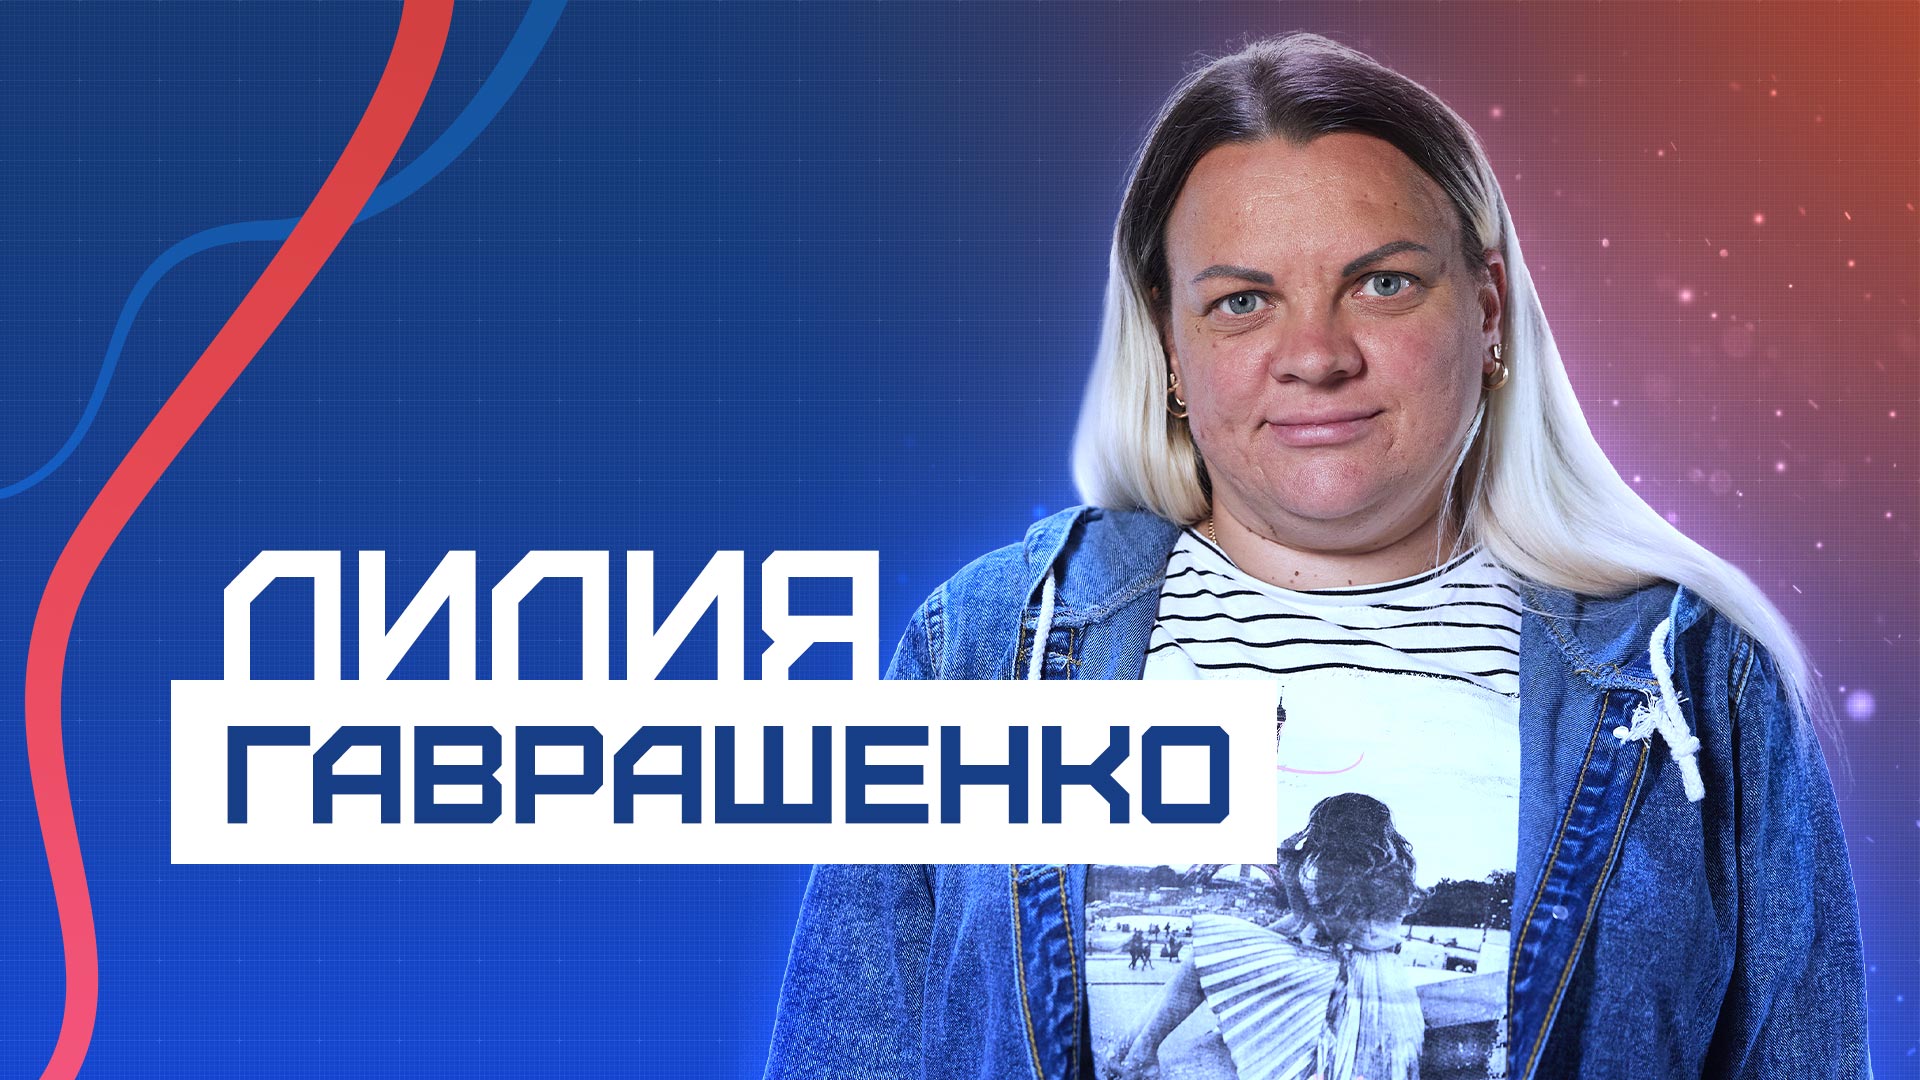 История бойца Лилии Гаврашенко